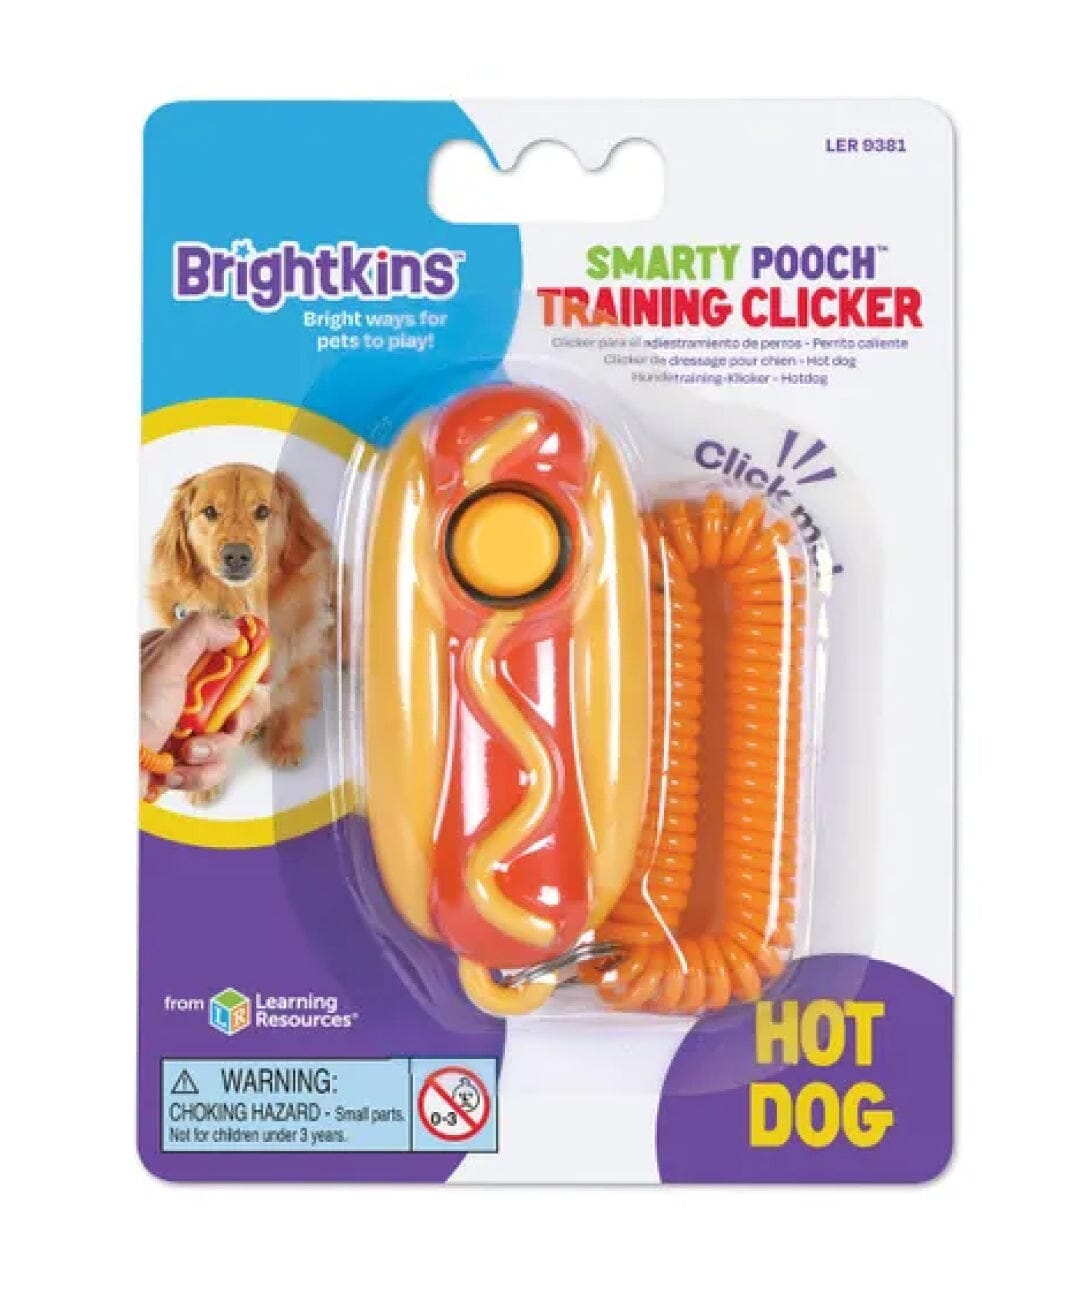 Dog Training Hot Dog Clicker Training Clicker Brightkins 